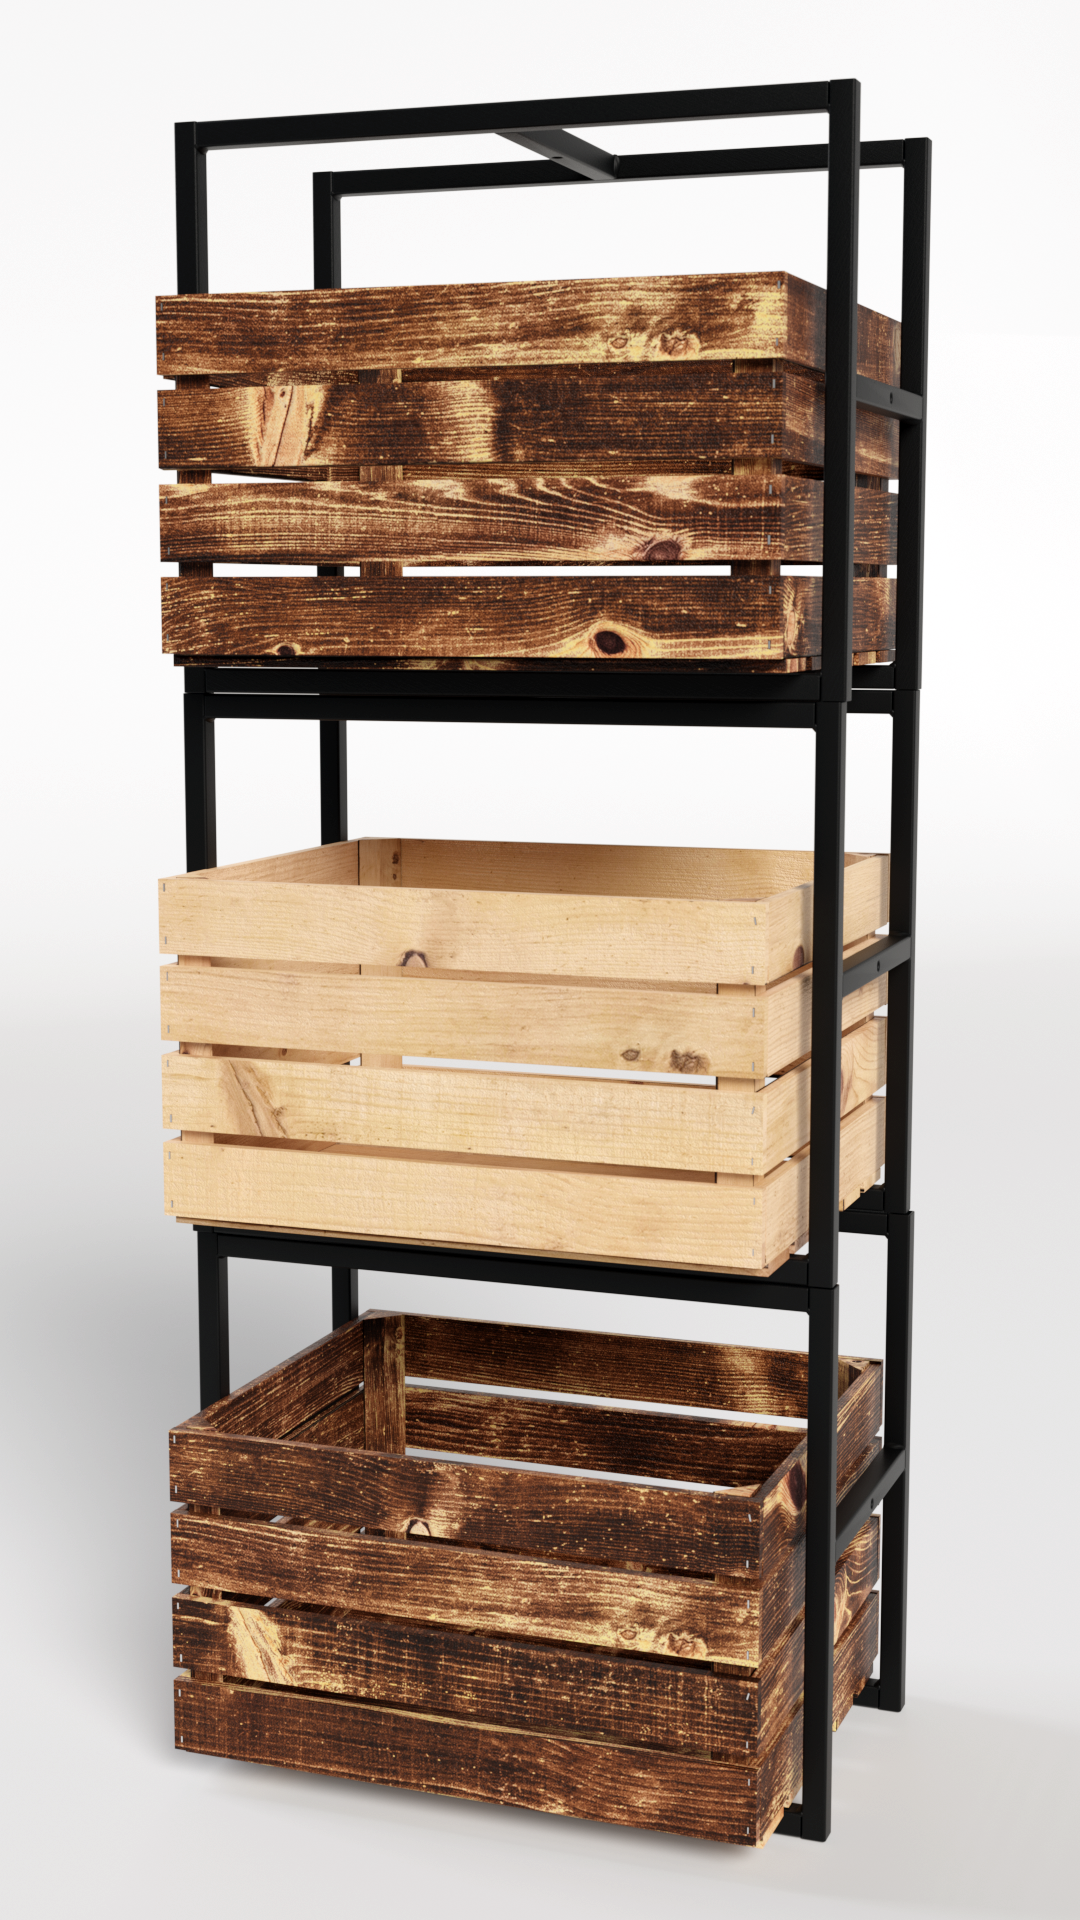 3D blender cycles wooden crates crates wood texture